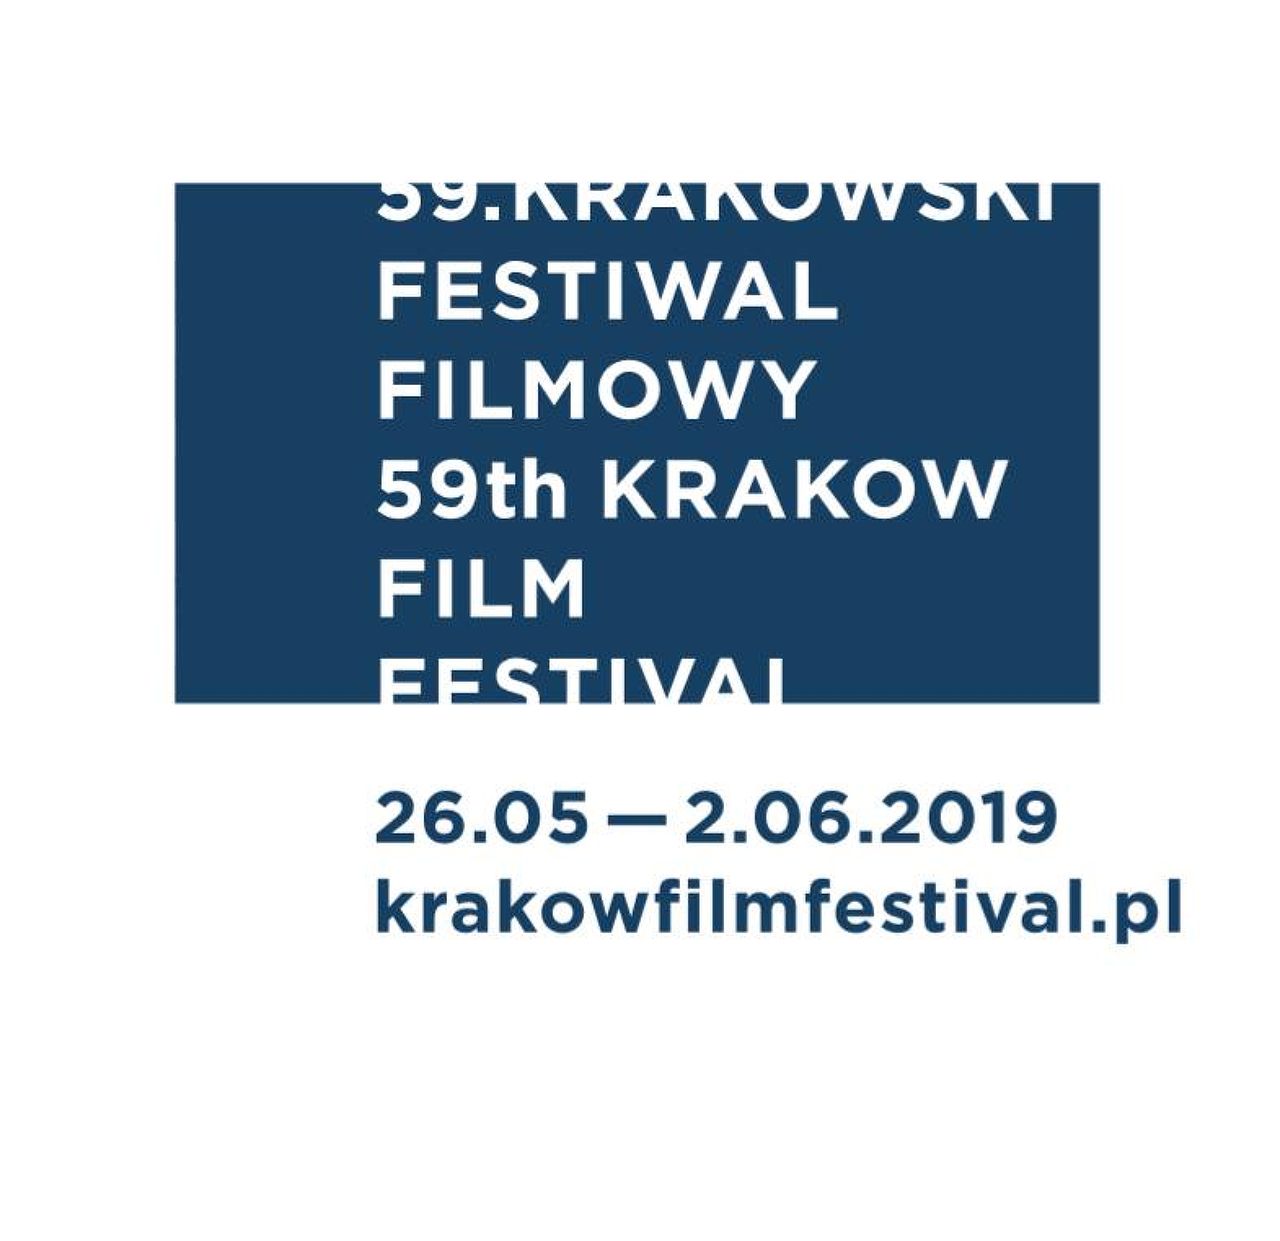 59th Krakow Film Festival